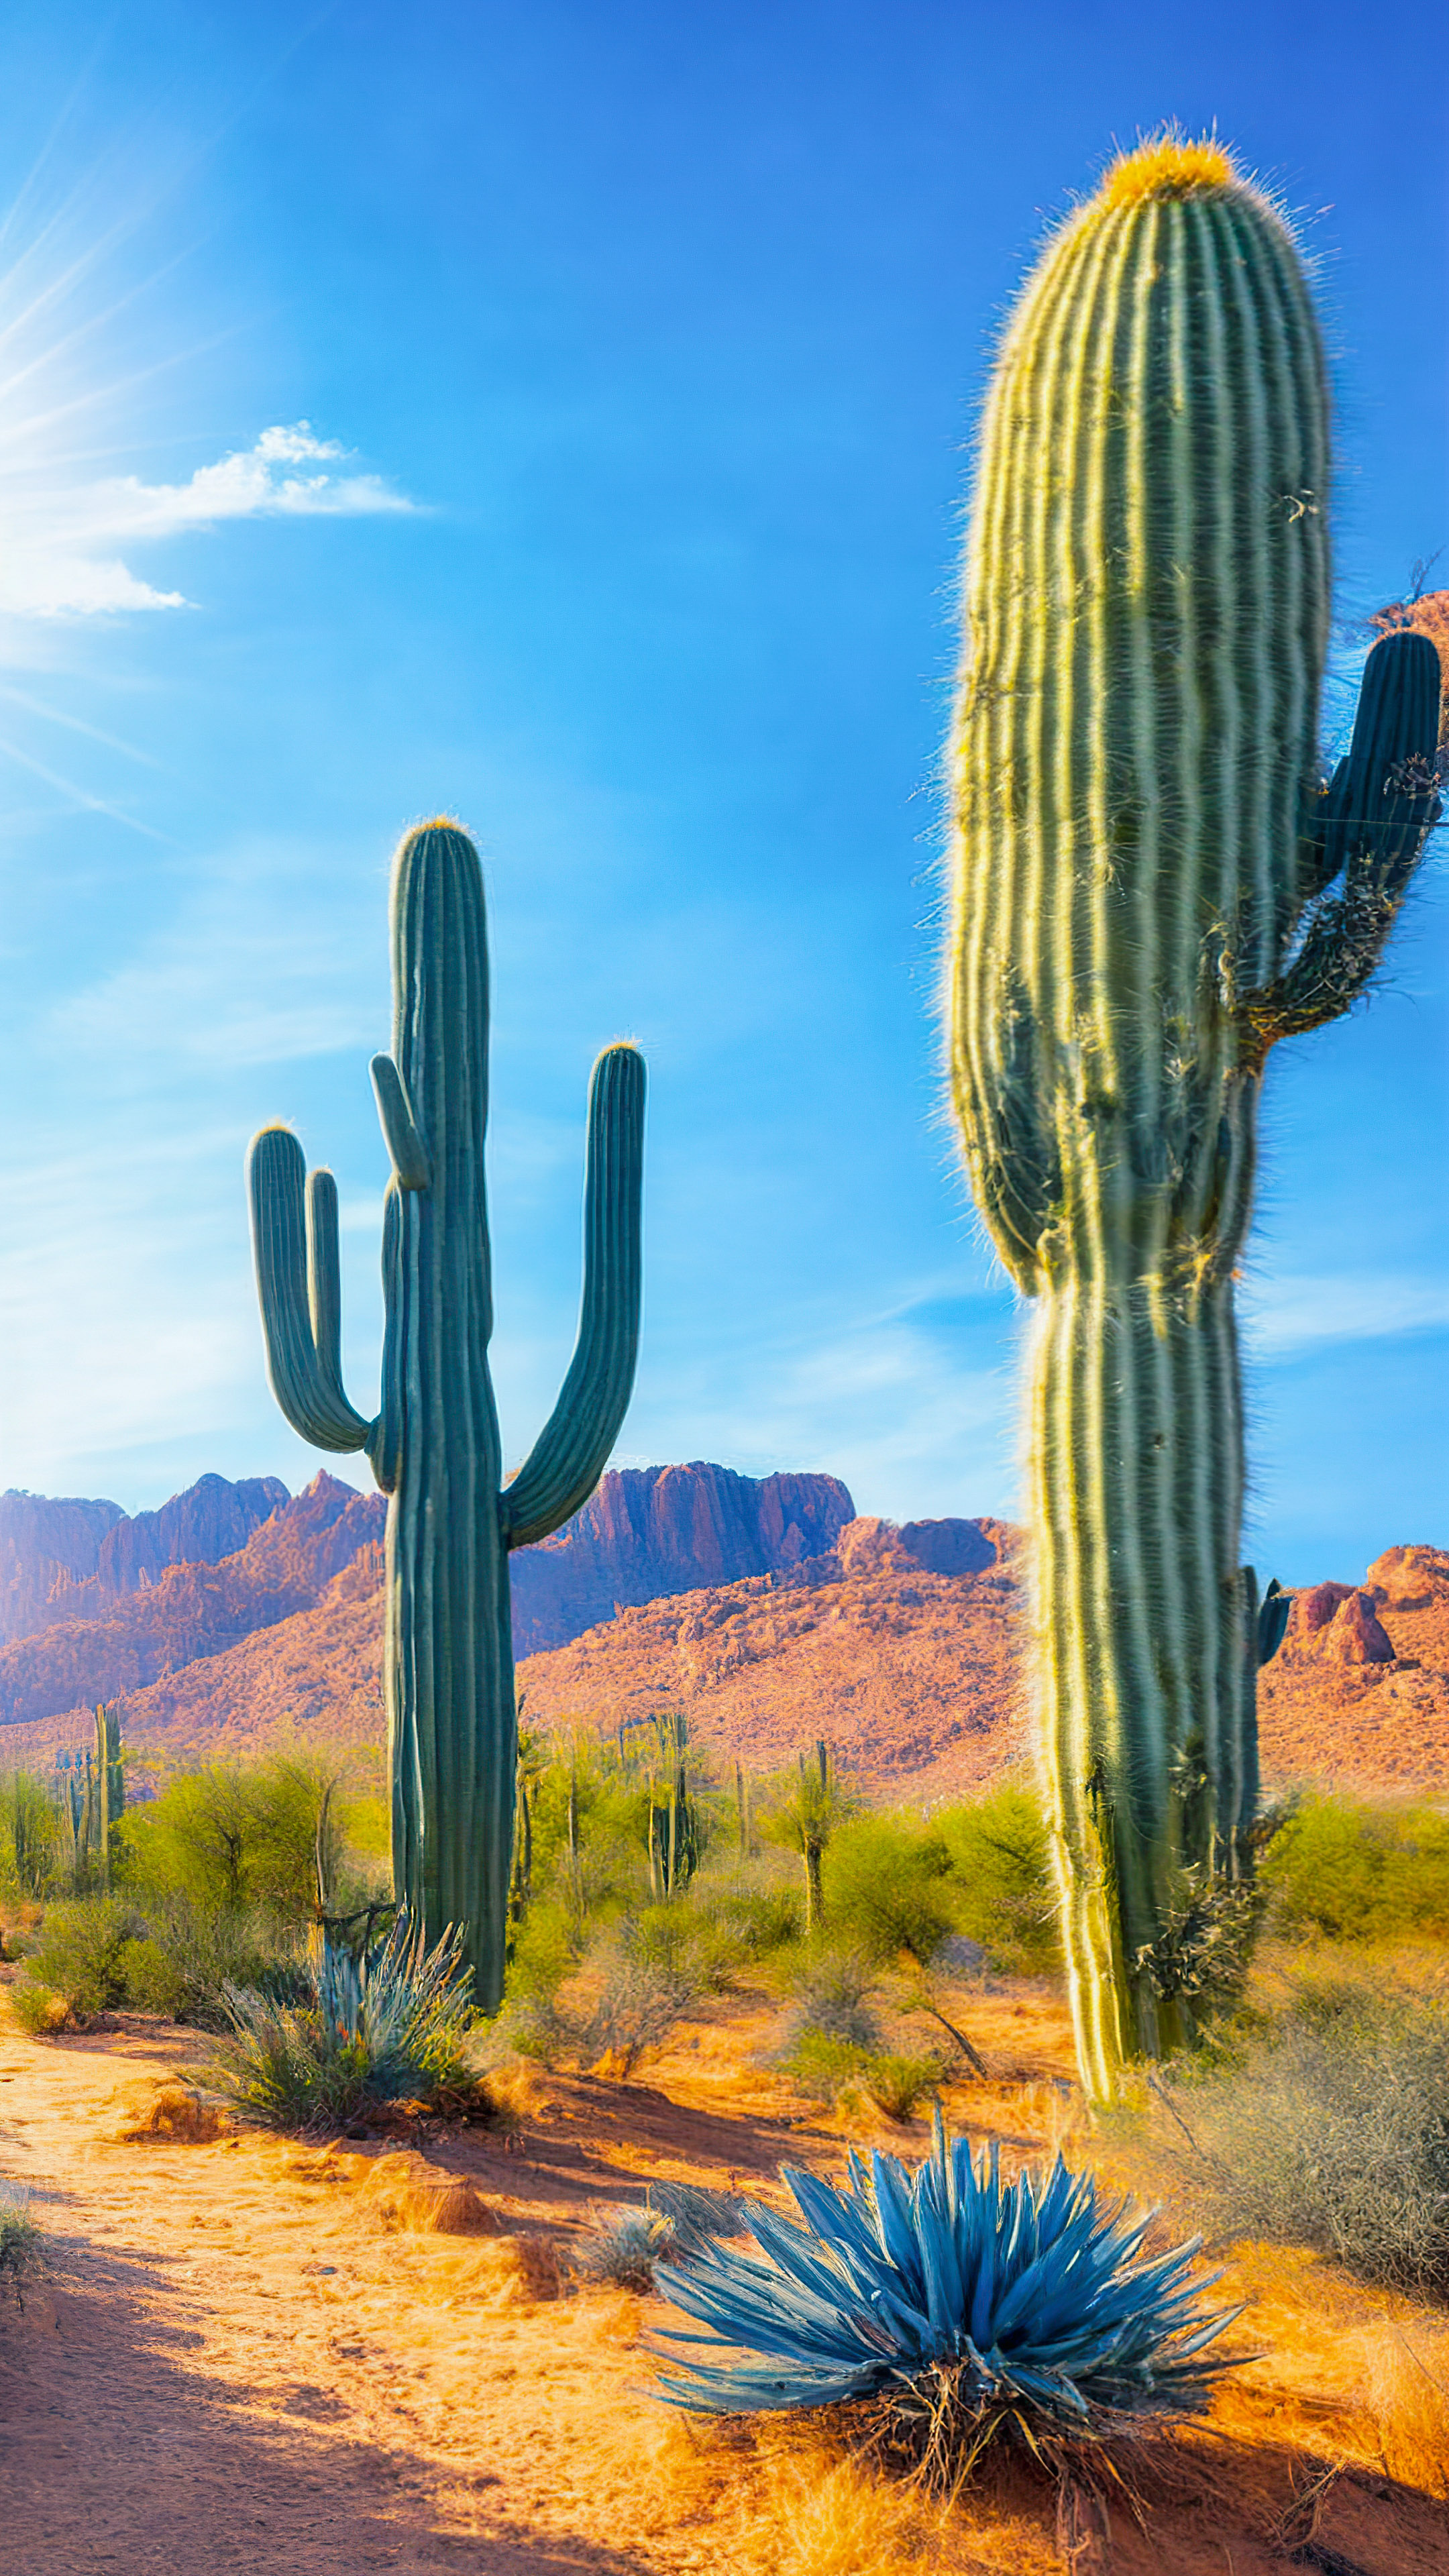 Savourez la splendeur de notre fond d'écran de nature en 4K pour iPhone, présentant un paysage désertique baigné de soleil avec des cactus saguaro imposants et des cieux bleus sans fin.